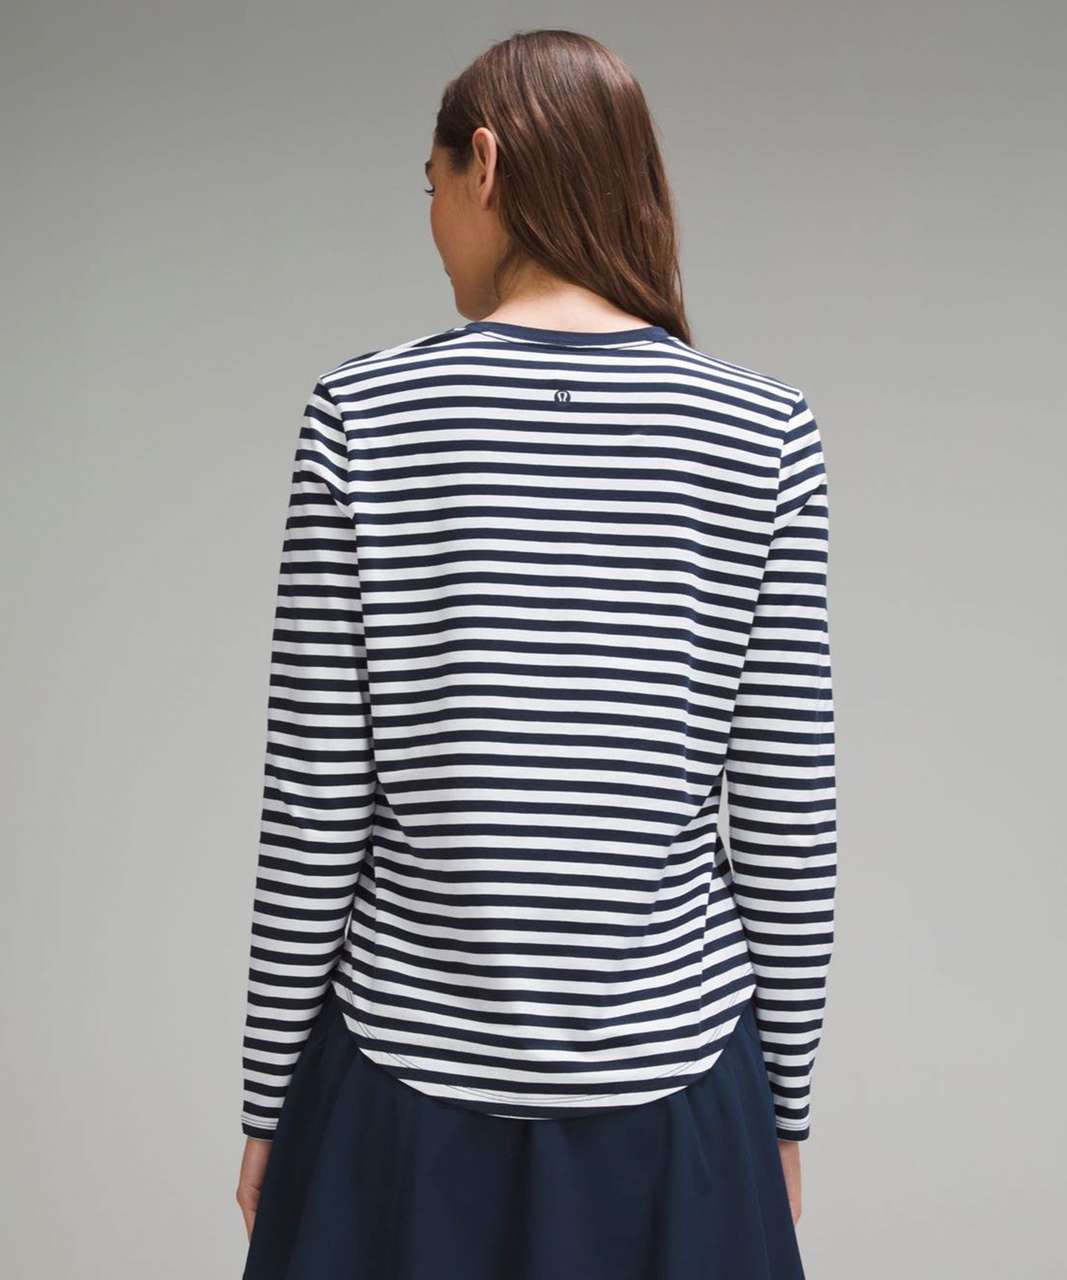 Lululemon Love Long-Sleeve Shirt - True Stripe True Navy White